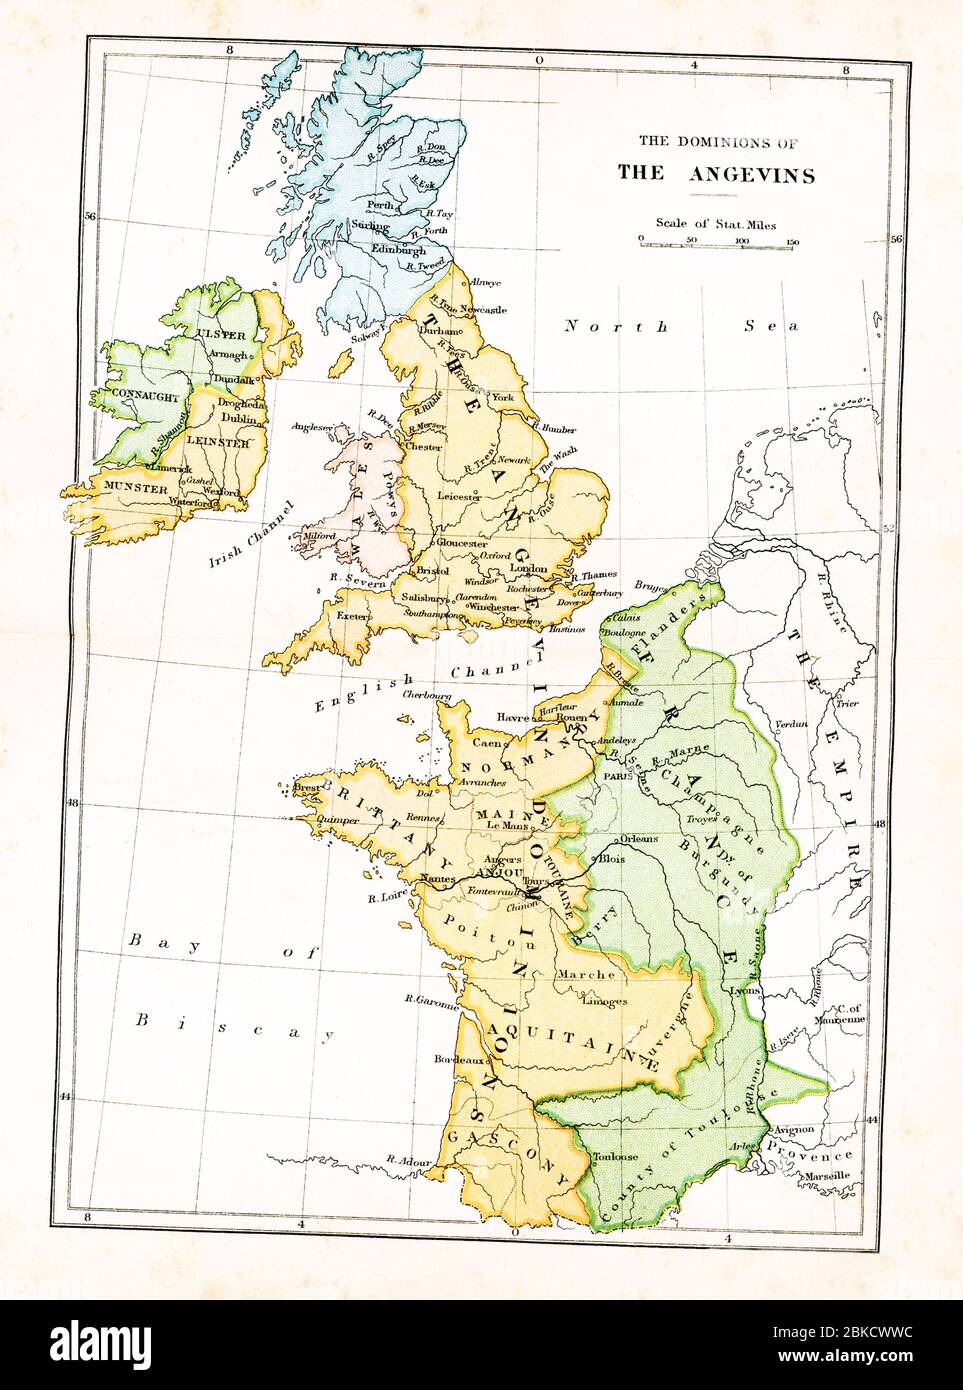 Questa mappa mostra i domini degli Angioini in Gran Bretagna. Gli Angioini erano una casa reale di origine francese che governò l'Inghilterra nel XII e all'inizio del XIII secolo; i suoi monarchi erano Enrico II, Riccardo i e Giovanni. Foto Stock